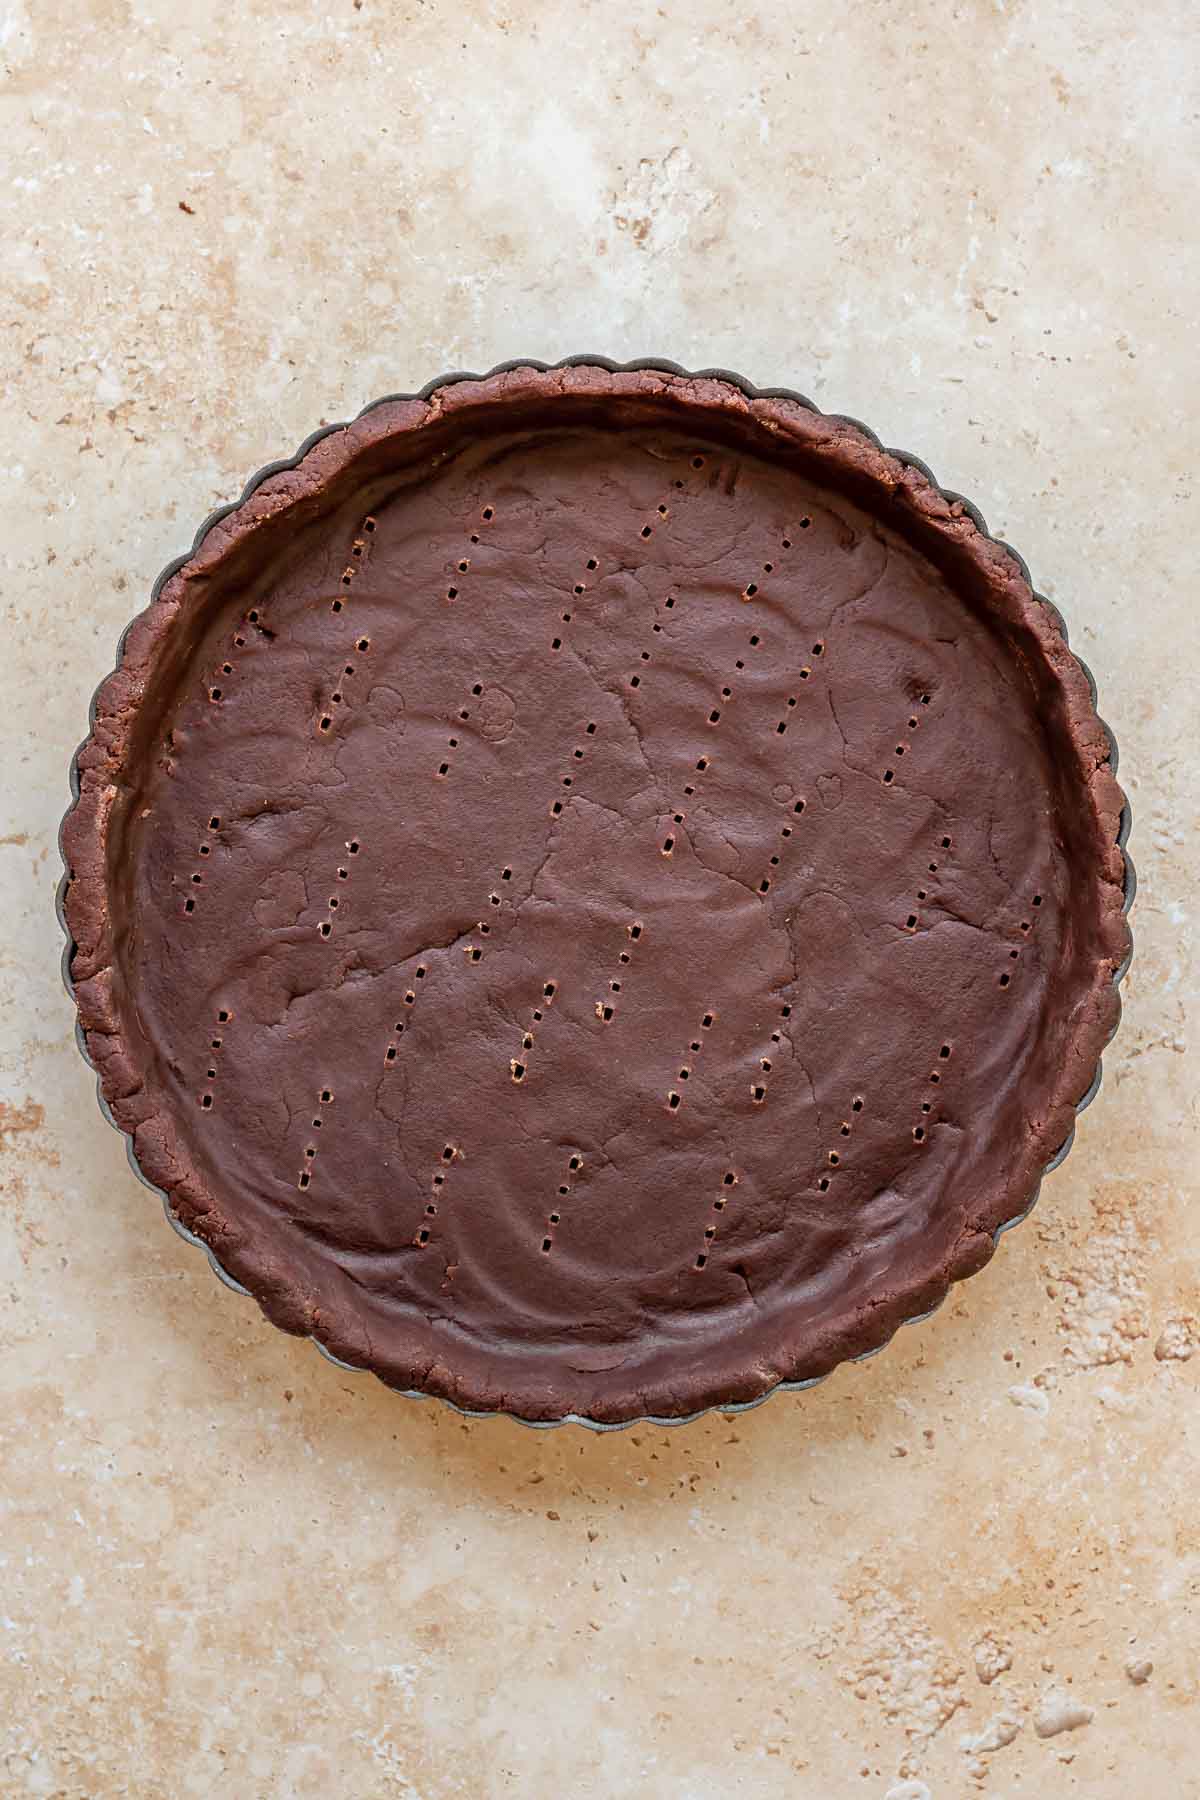 Chocolate sweet tart crust in a tart pan before baking.